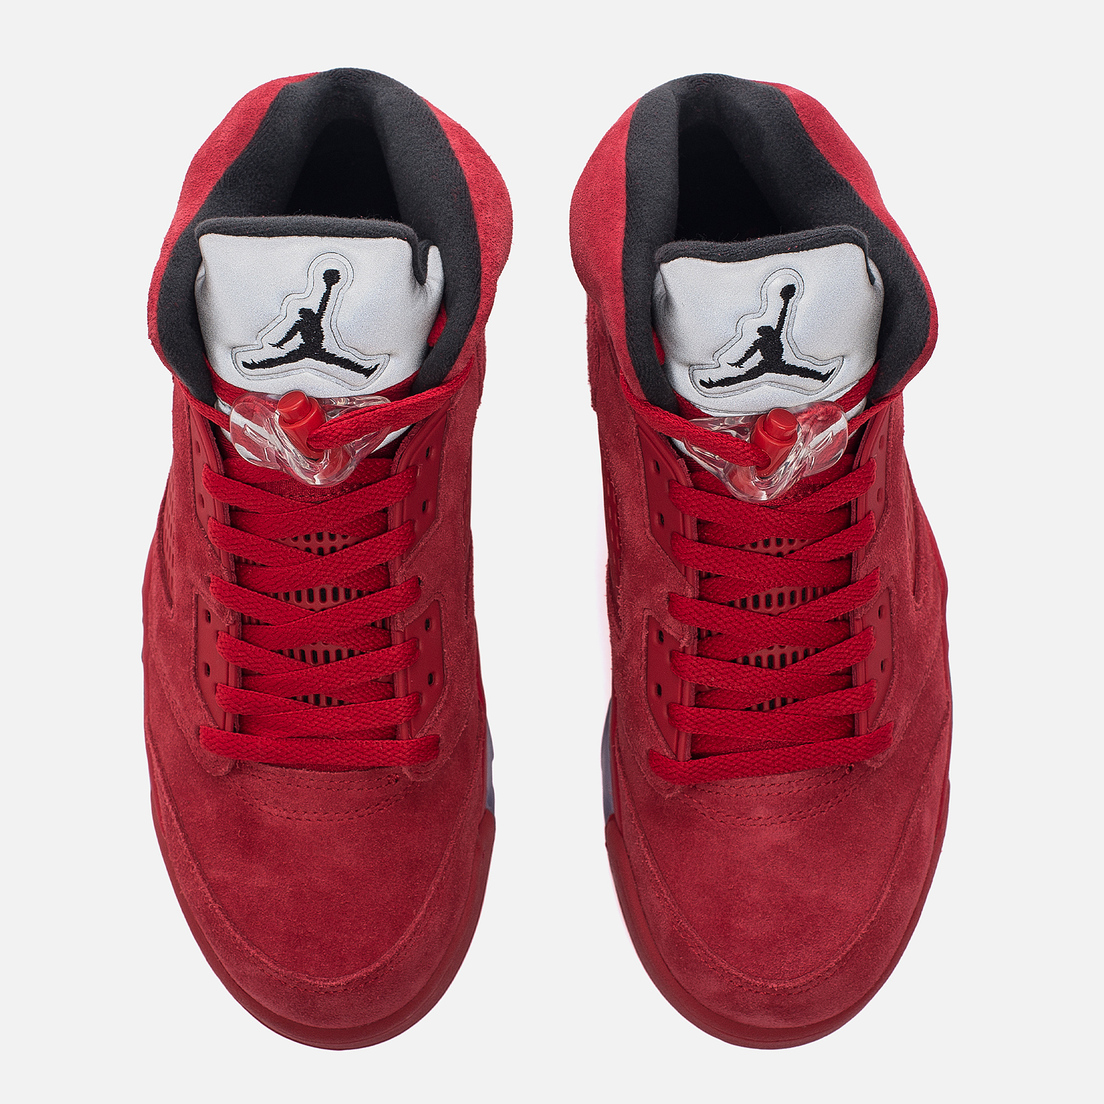 Jordan Мужские кроссовки Air Jordan 5 Red Suede